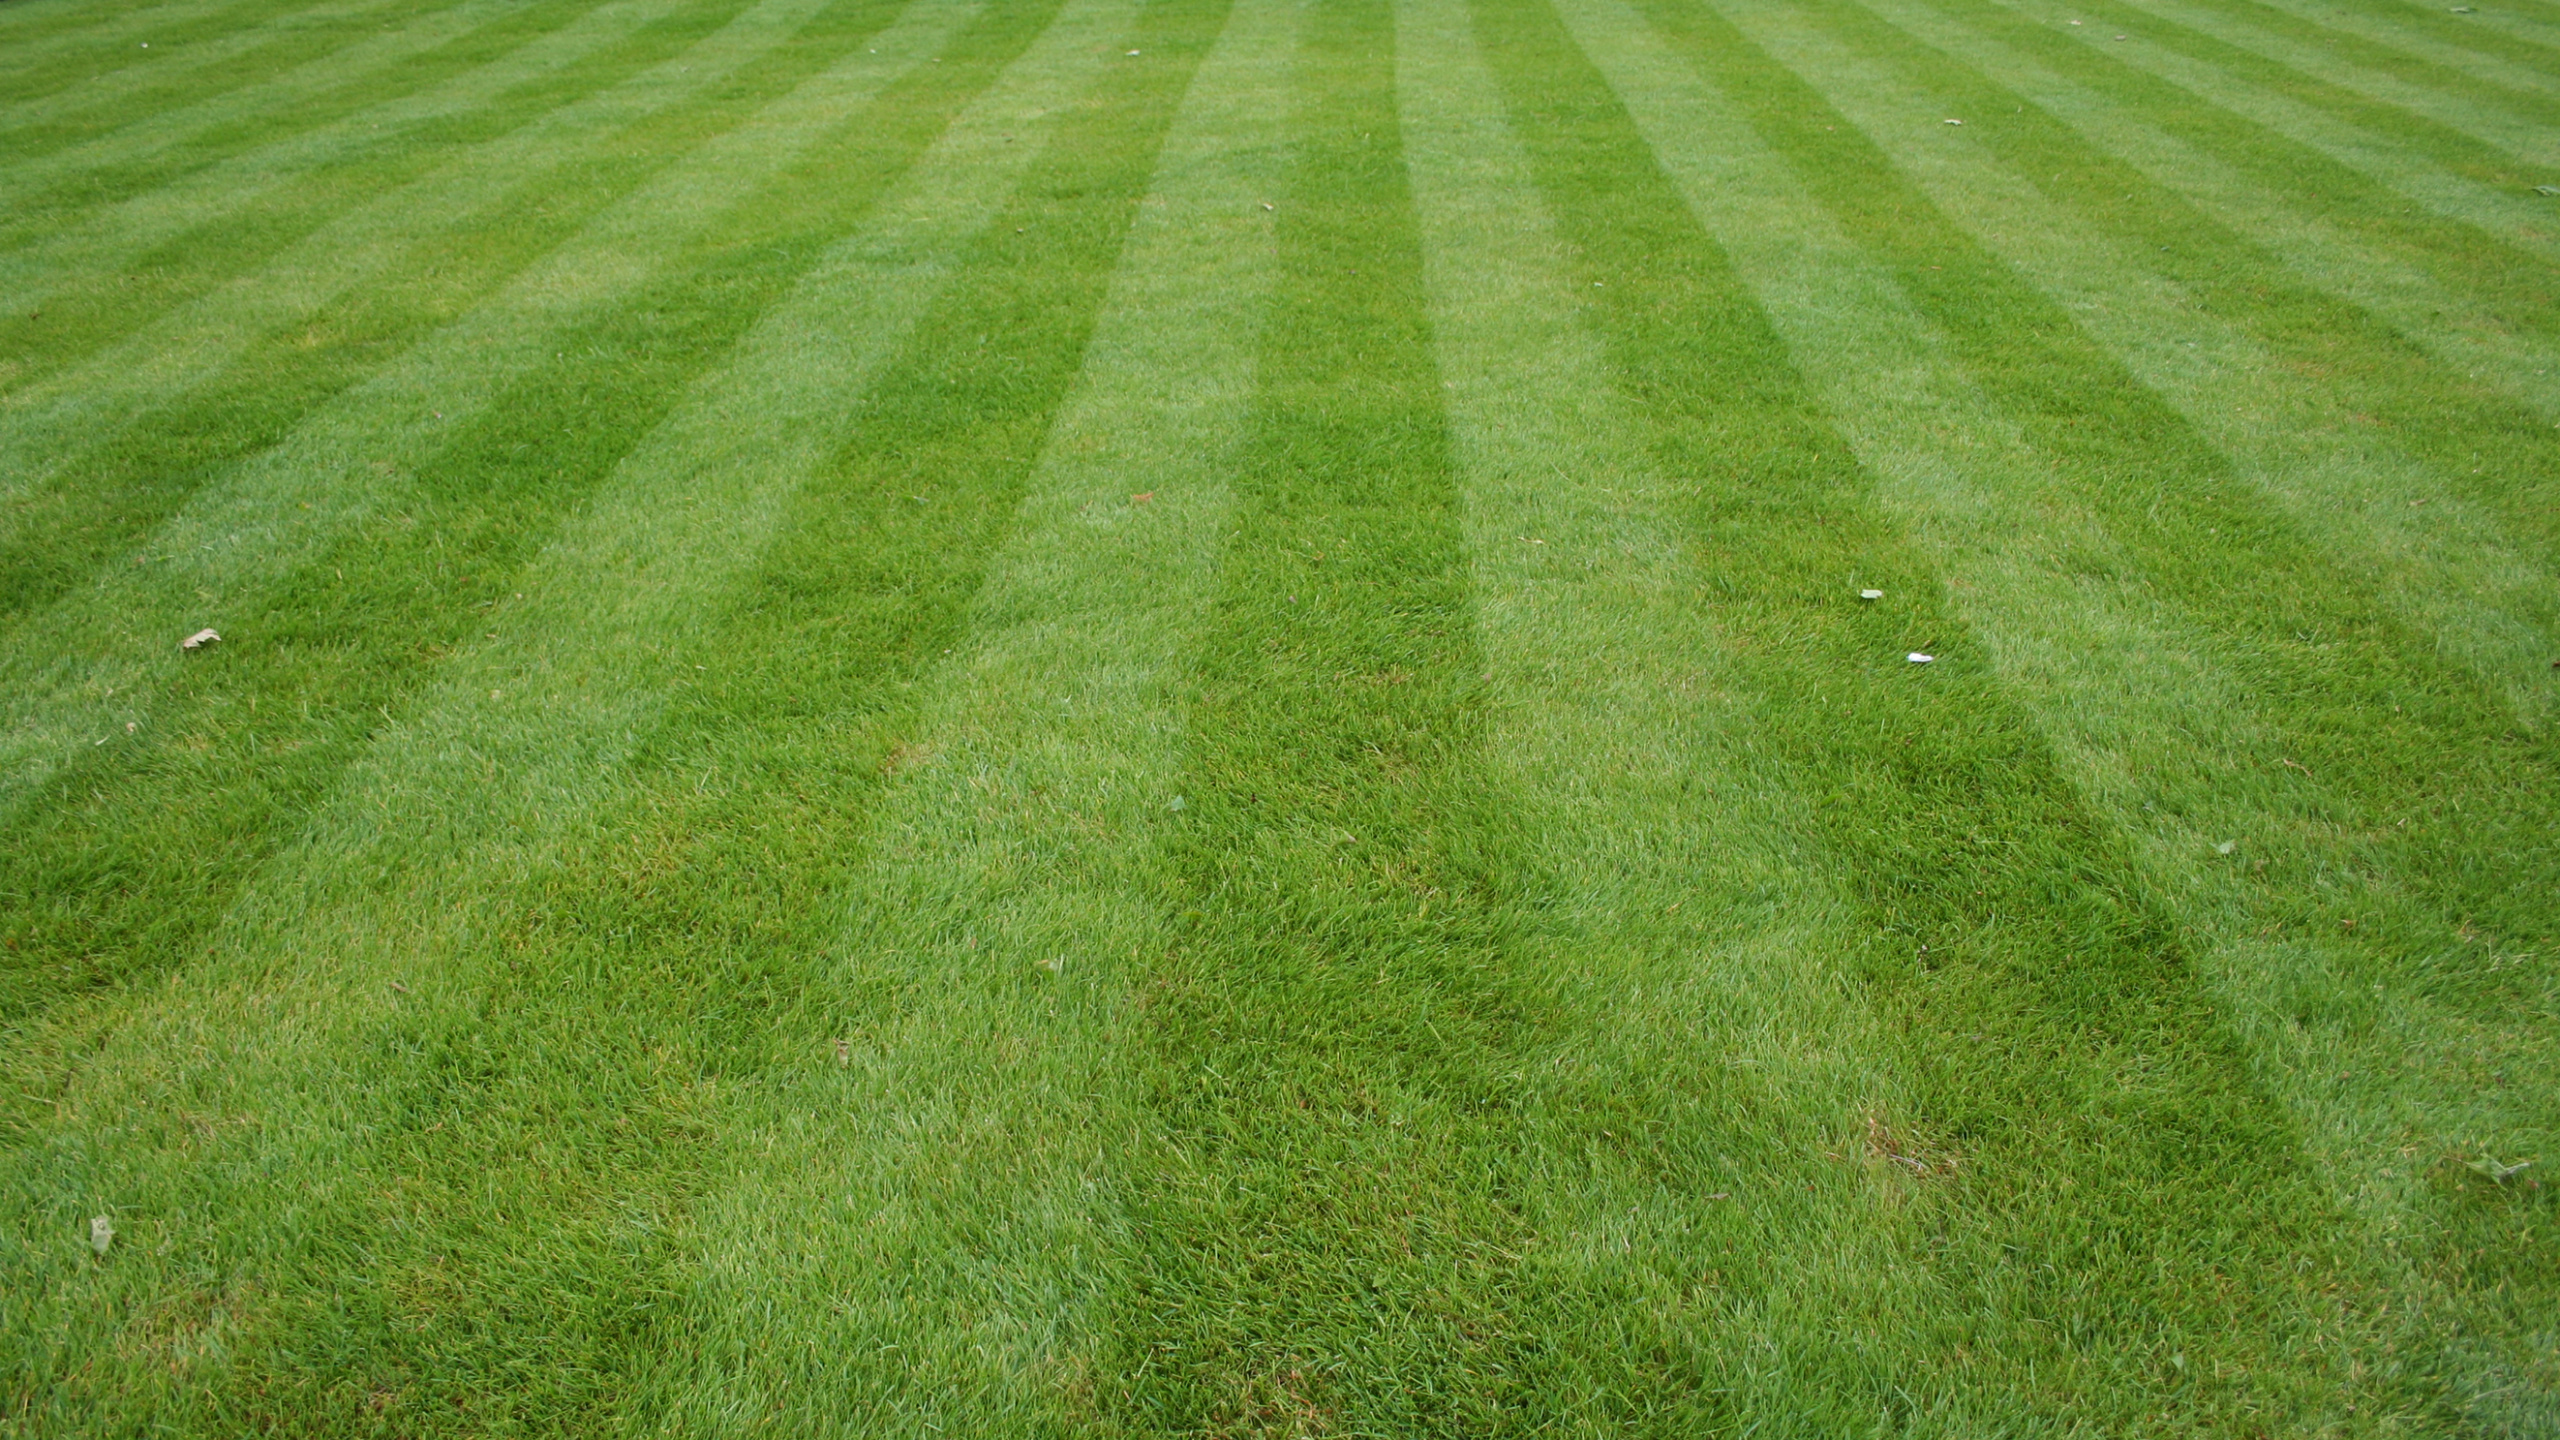 草坪, 人造草坪, 院子里, 绿色的, 草 壁纸 2560x1440 允许